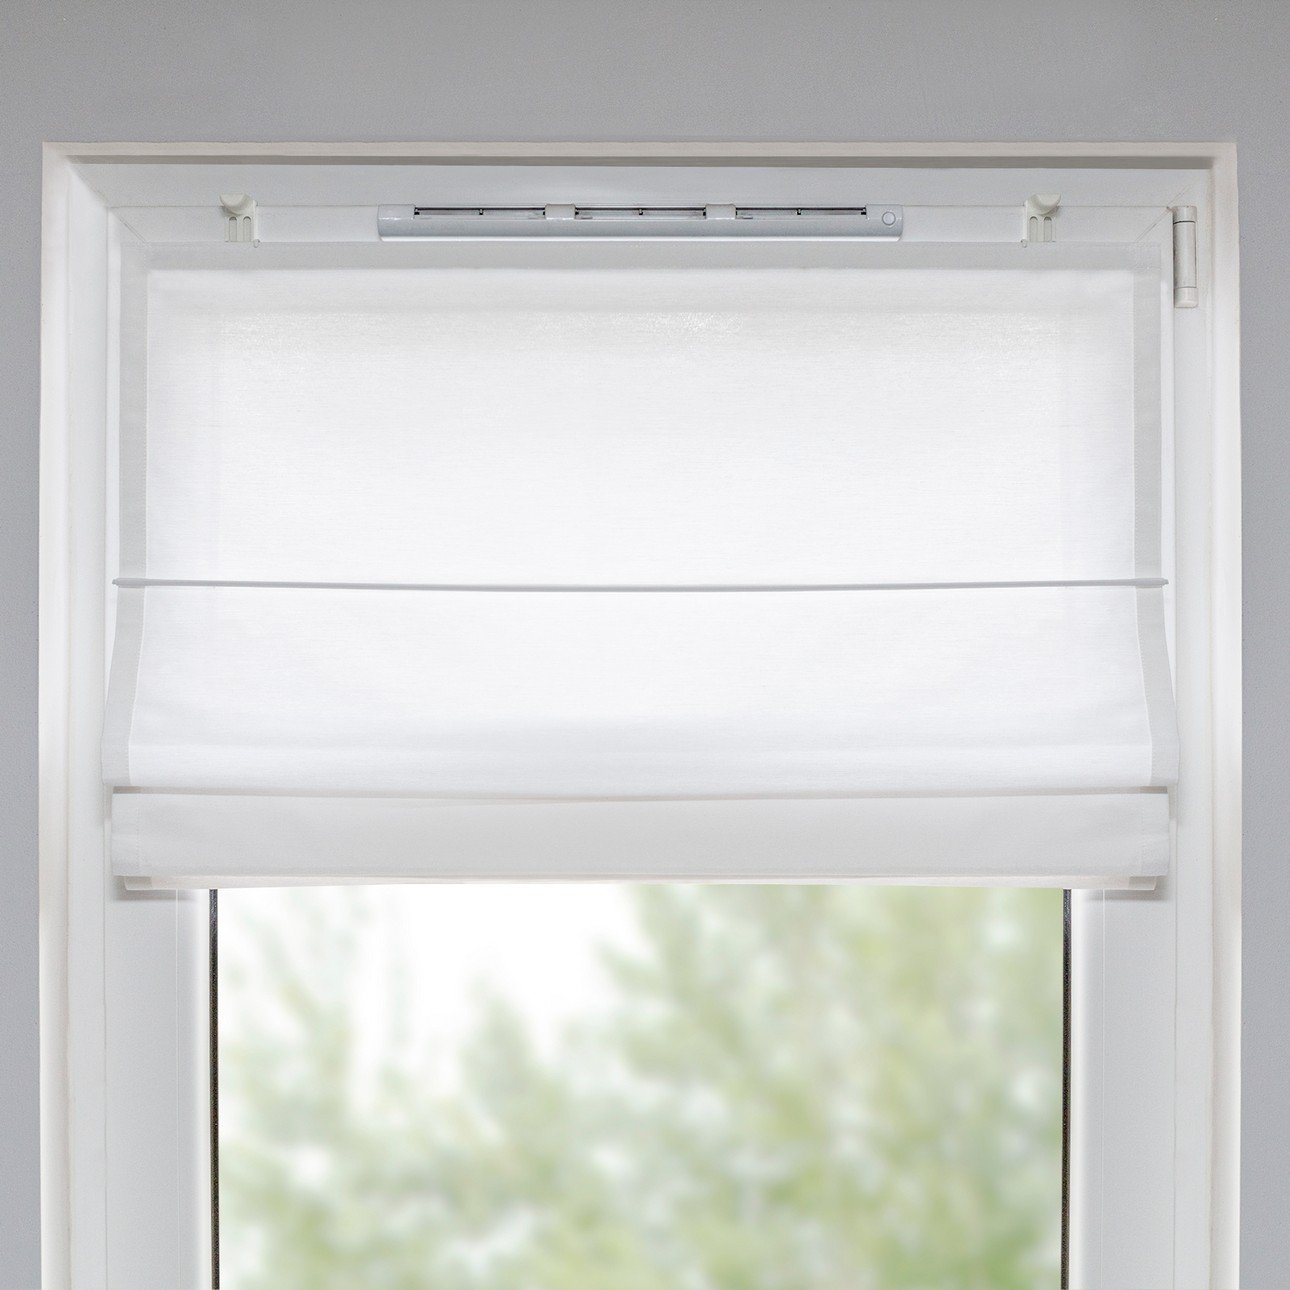 Klemmträger für Fenster mit Lüfter (2 Stck.), 4 x 9,5 cm